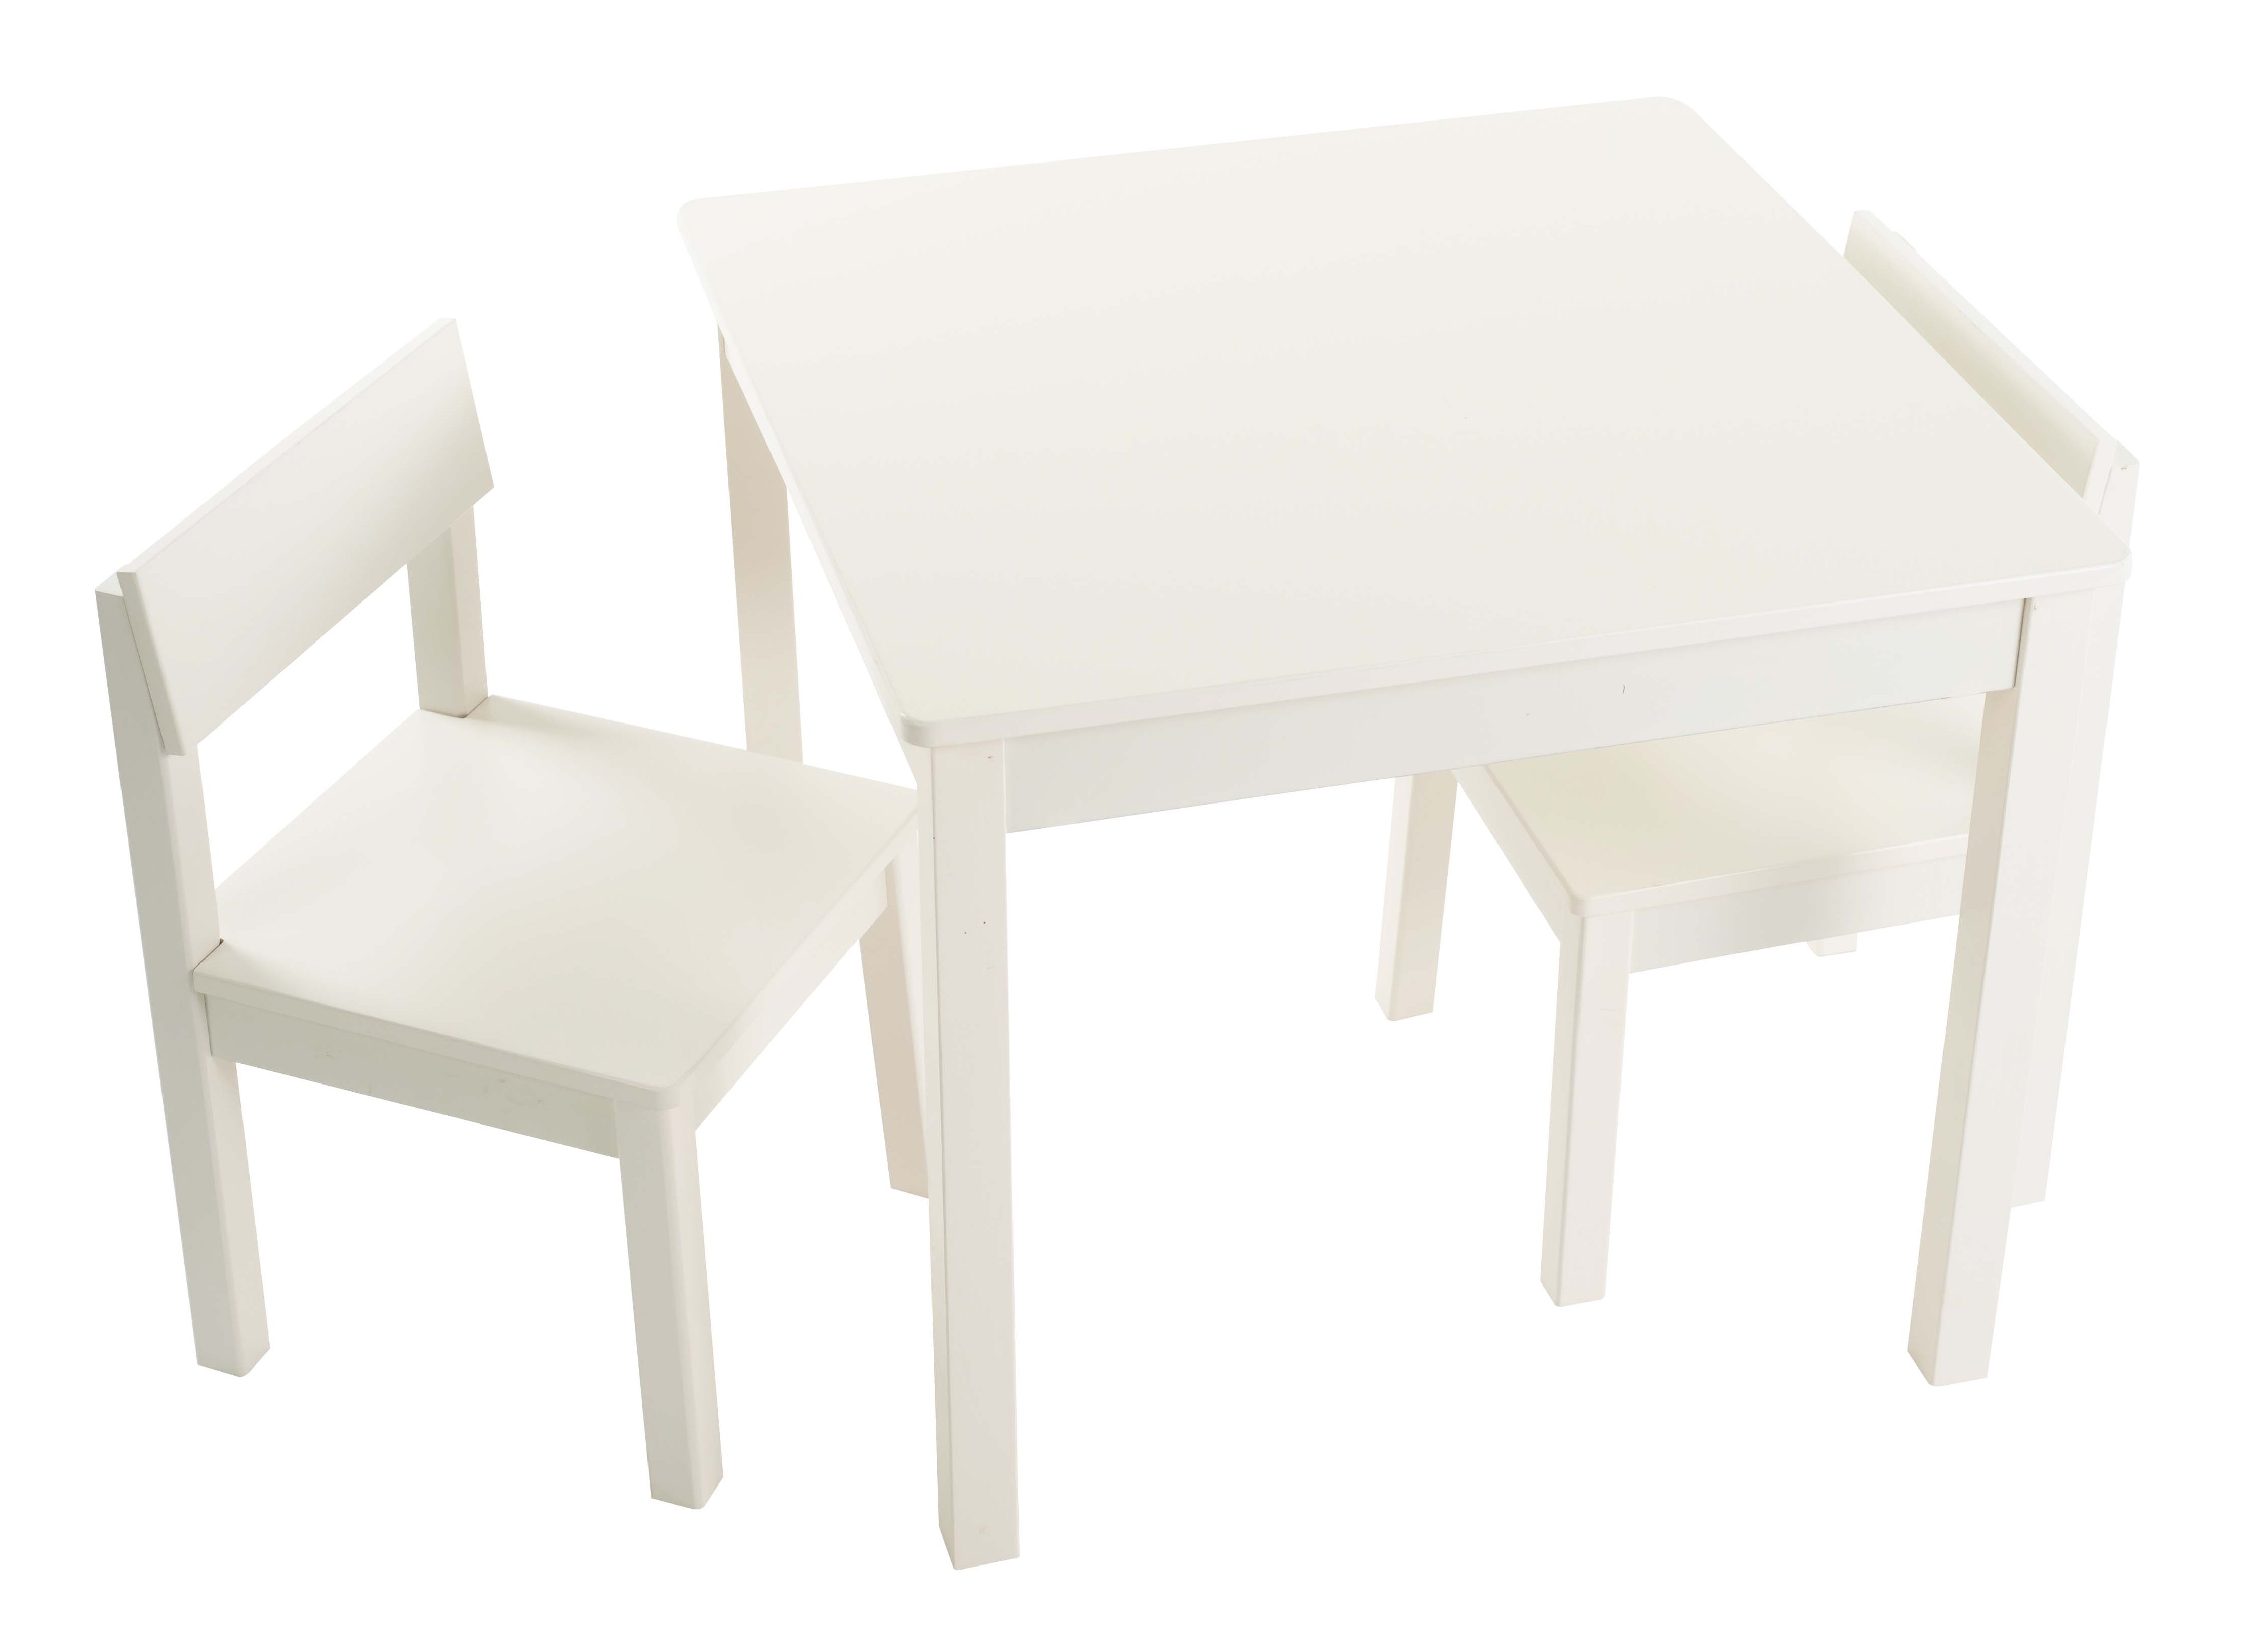 שולחן וכסאות לילדים - דגם חלק – צבע לבן -  קוקולה.   6 צבעים לבחירה: שמנת, לבן, ורוד, לילך, פיסטוק, תכלת. מחיר הסט כולל שולחן ושני כסאות. ניתן להוסיף פלטת פרספקס להגנה על פלטת השולחן בעלות של 69 ש